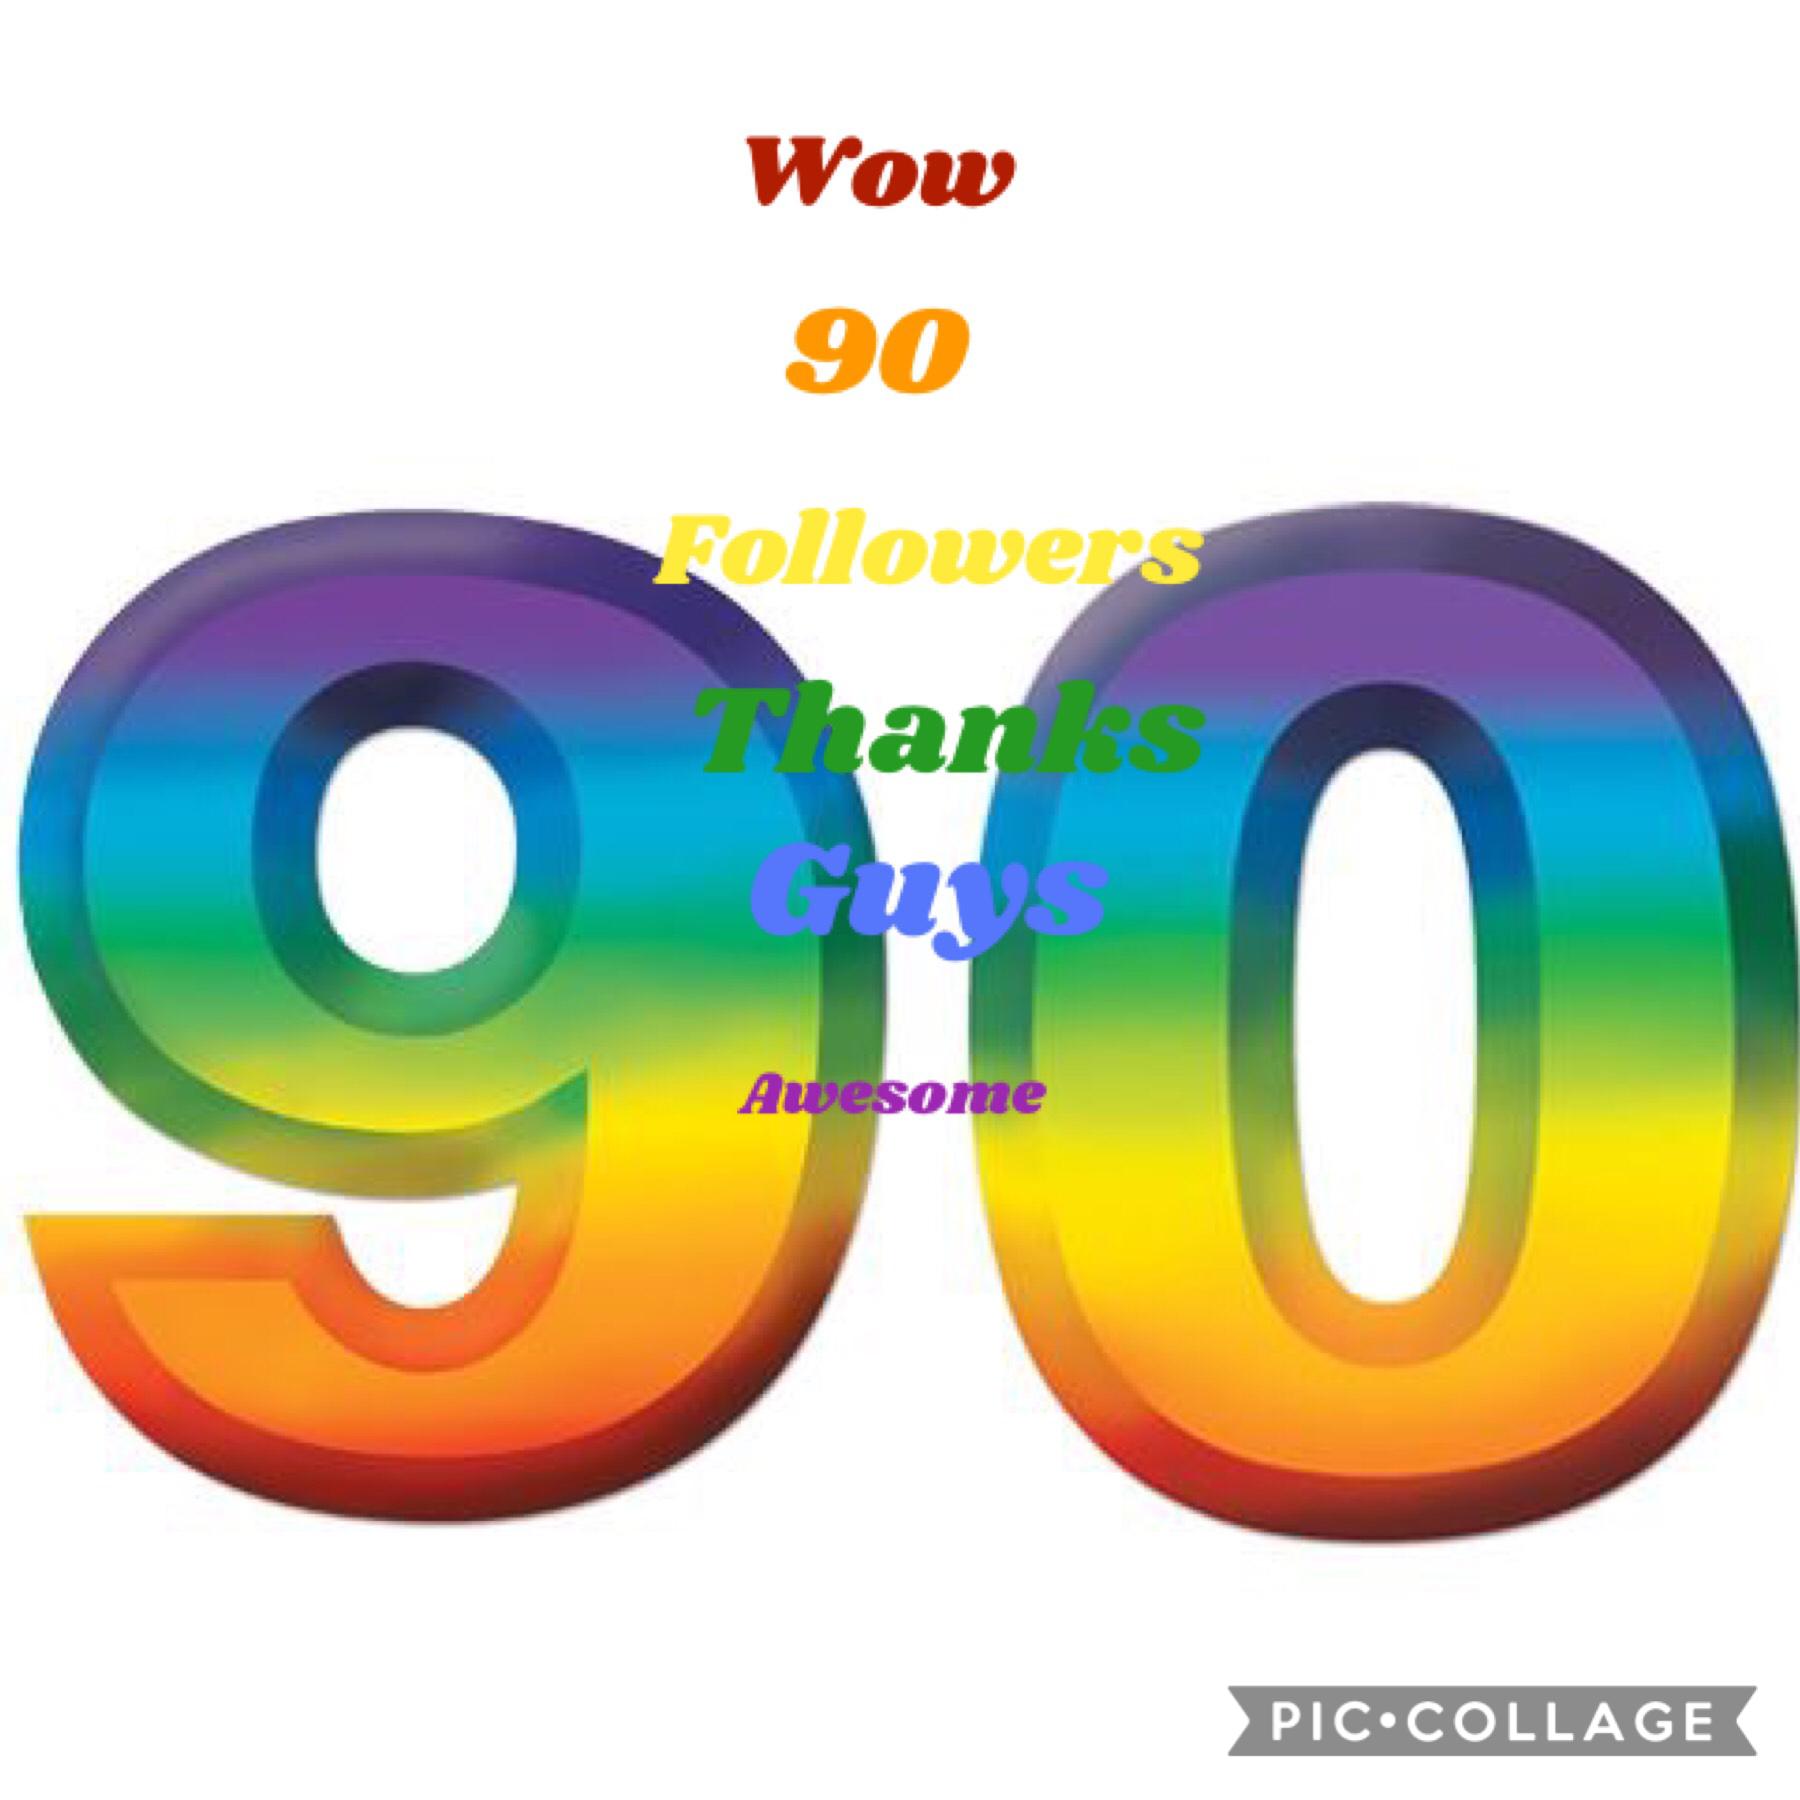 WOW 90